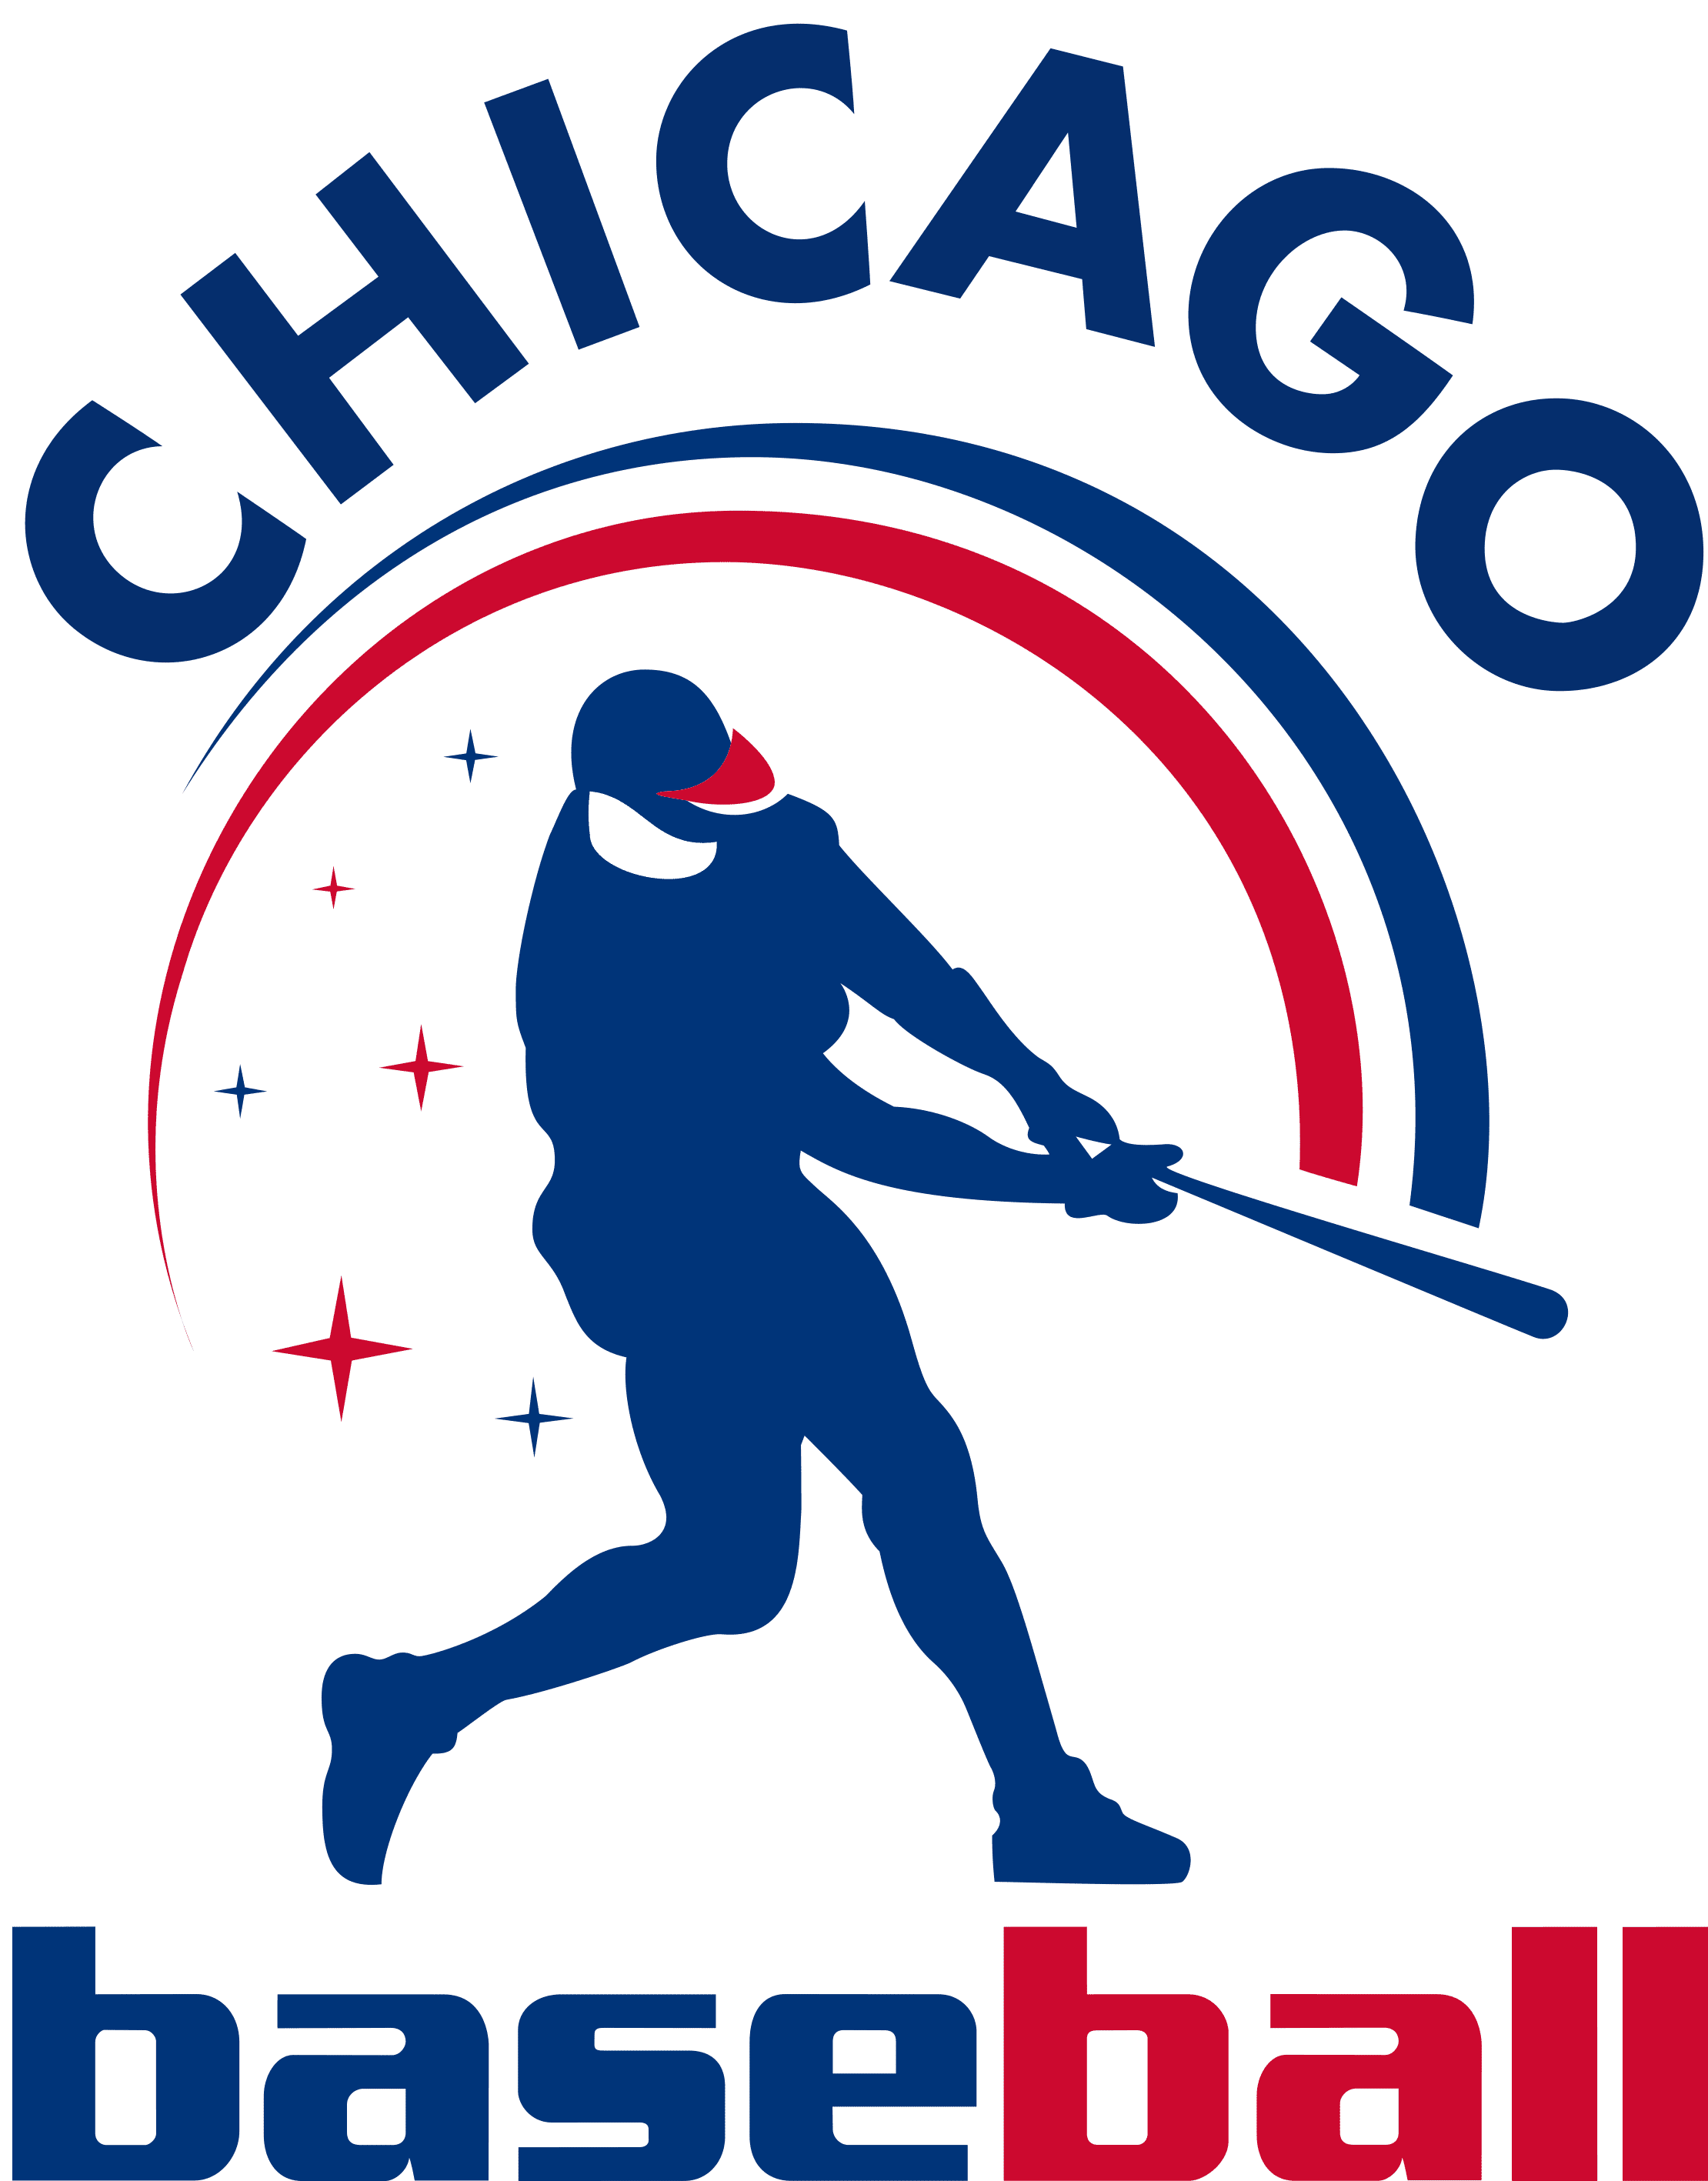 Chicago Cubs Text Logo svg, mlb svg, eps, dxf, png, digital file